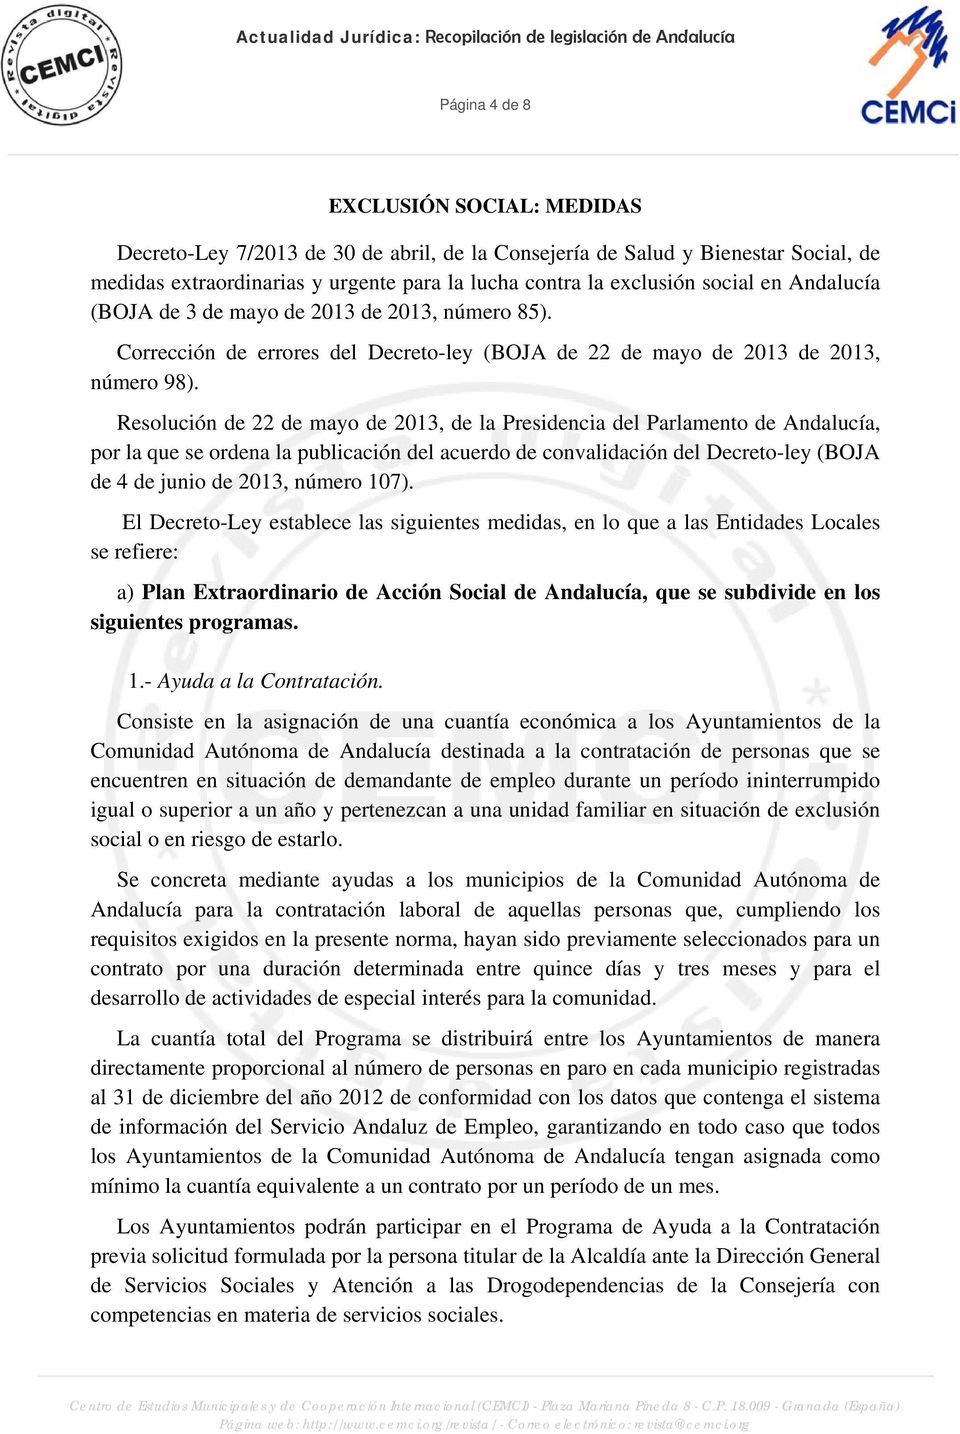 Corrección de errores del Decreto-ley (BOJA de 22 de mayo de 2013 de 2013, número 98).